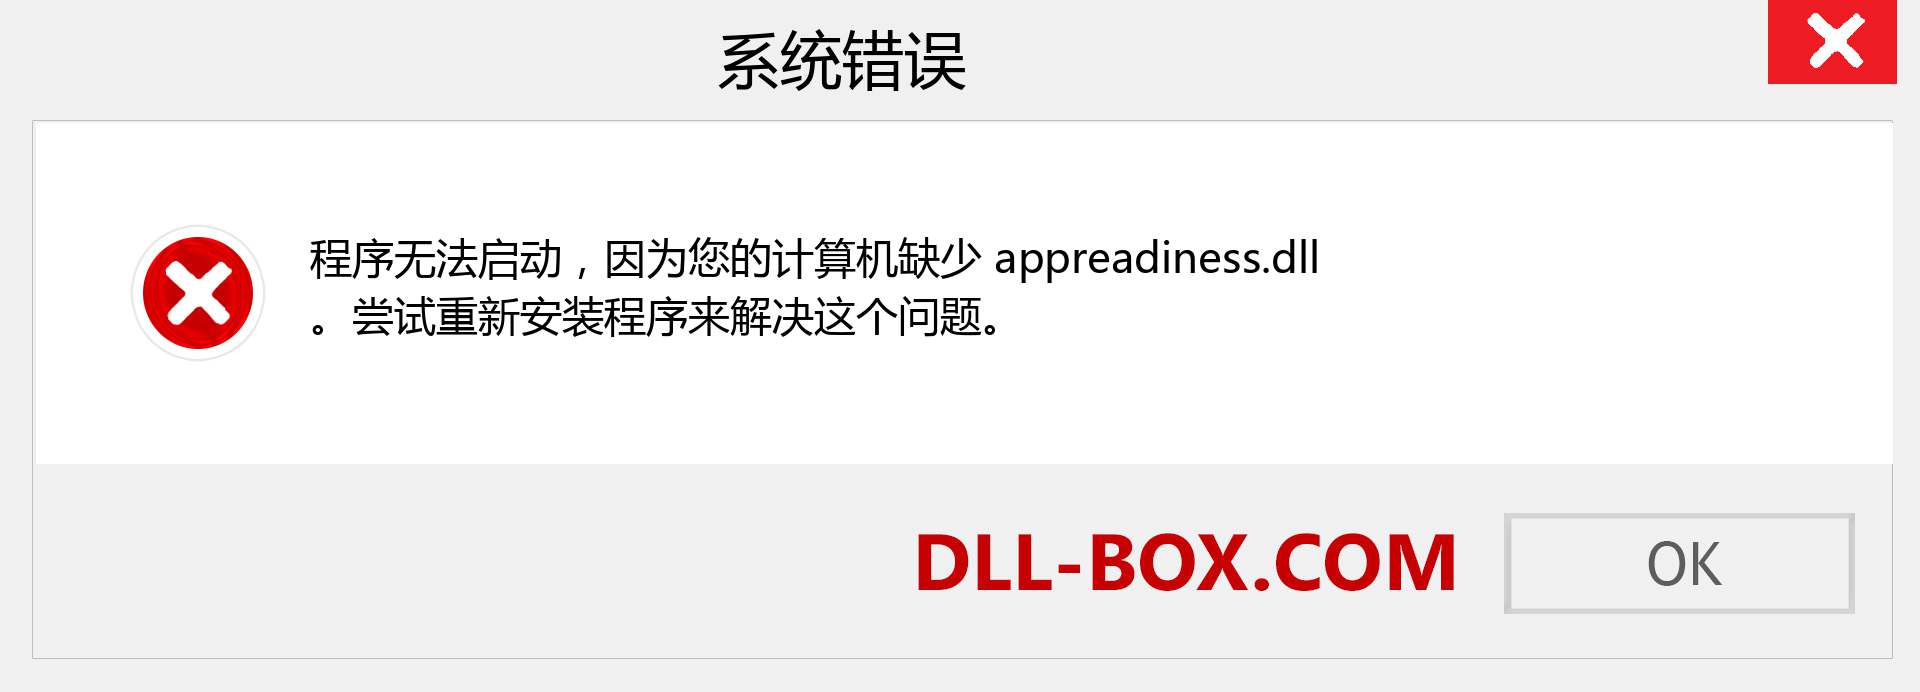 appreadiness.dll 文件丢失？。 适用于 Windows 7、8、10 的下载 - 修复 Windows、照片、图像上的 appreadiness dll 丢失错误